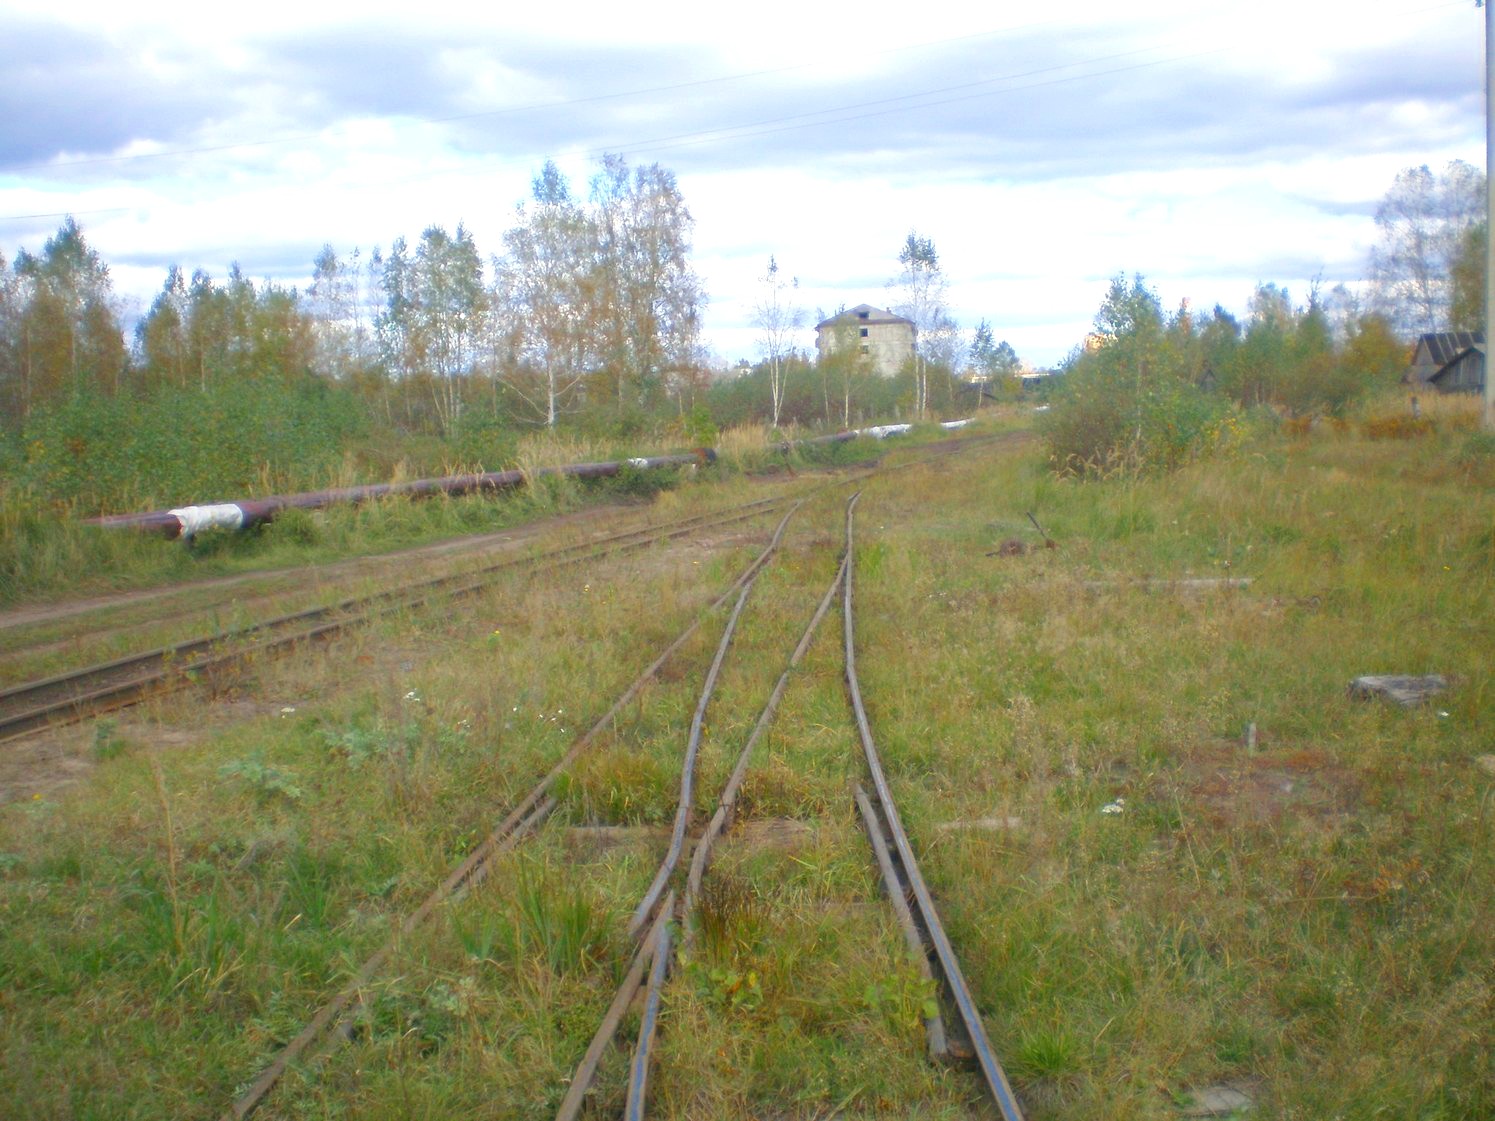 Узкоколейная железная дорога Радовицкого  транспортного управления — фотографии, сделанные в 2008 году (часть 3)